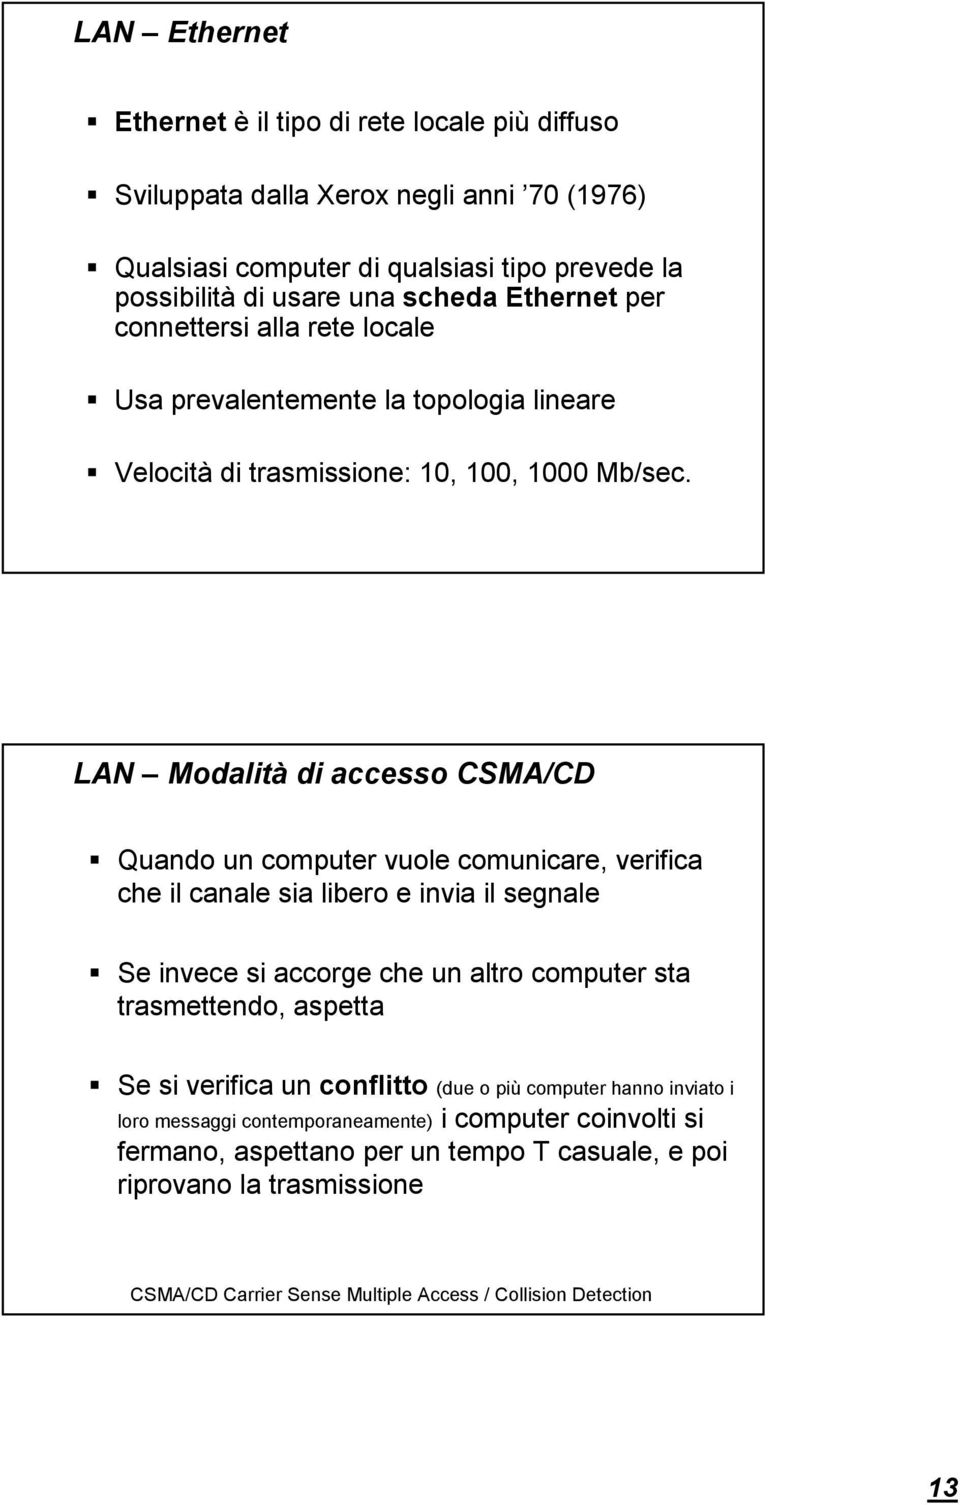 LAN Modalità di accesso CSMA/CD Quando un computer vuole comunicare, verifica che il canale sia libero e invia il segnale Se invece si accorge che un altro computer sta trasmettendo, aspetta